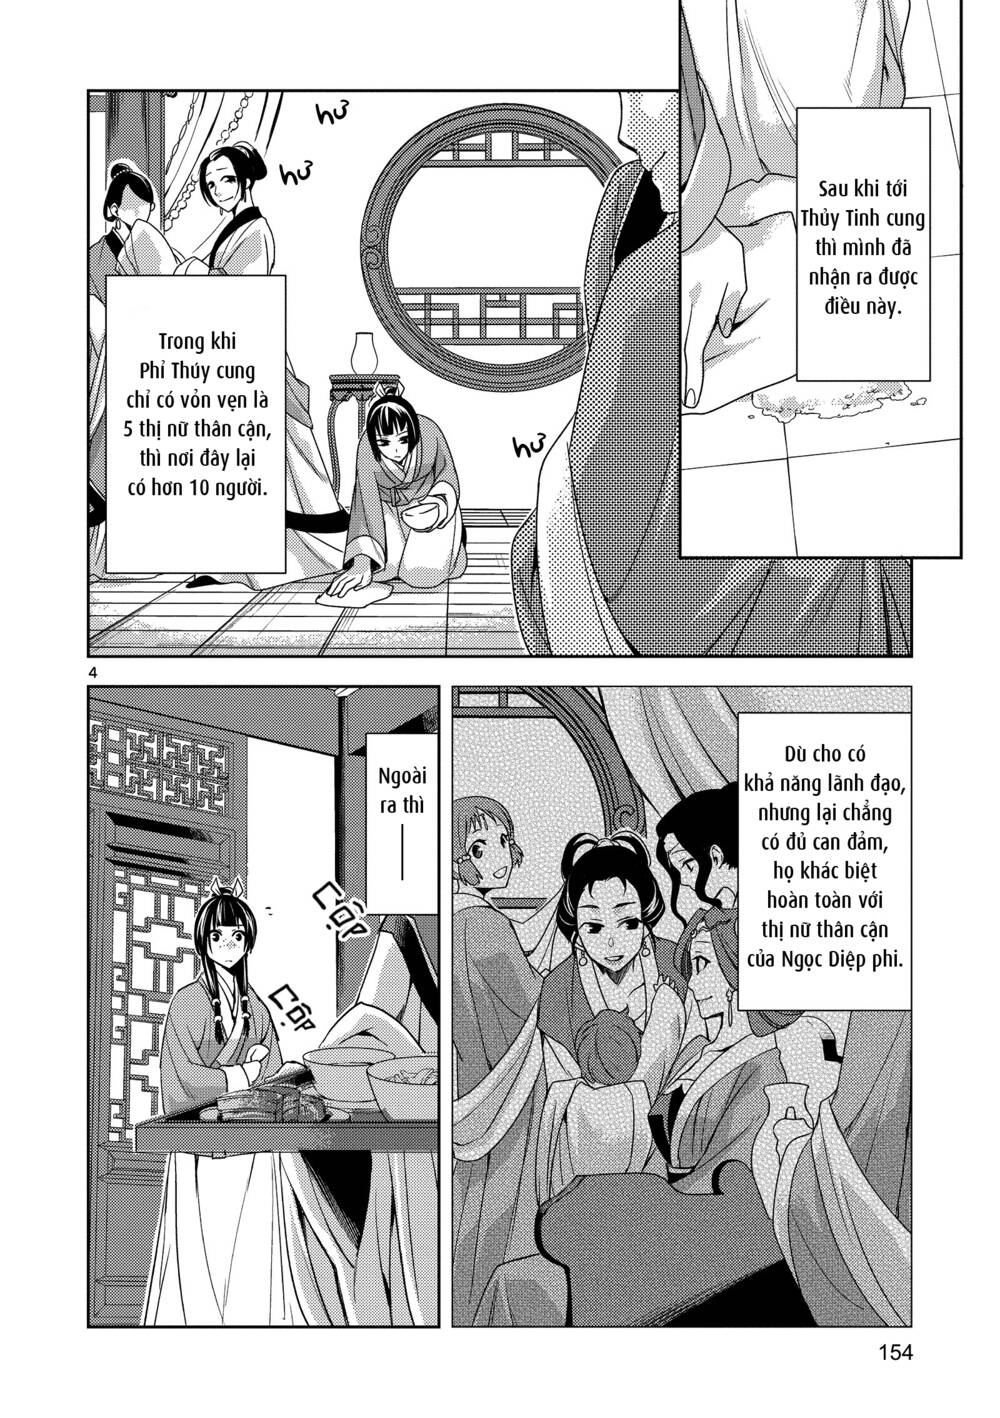 Dược Sư Tự Sự - Nhật ký giải mã bí ẩn chốn Hậu cung của Maomao Chapter 5: Khám bệnh - Trang 4